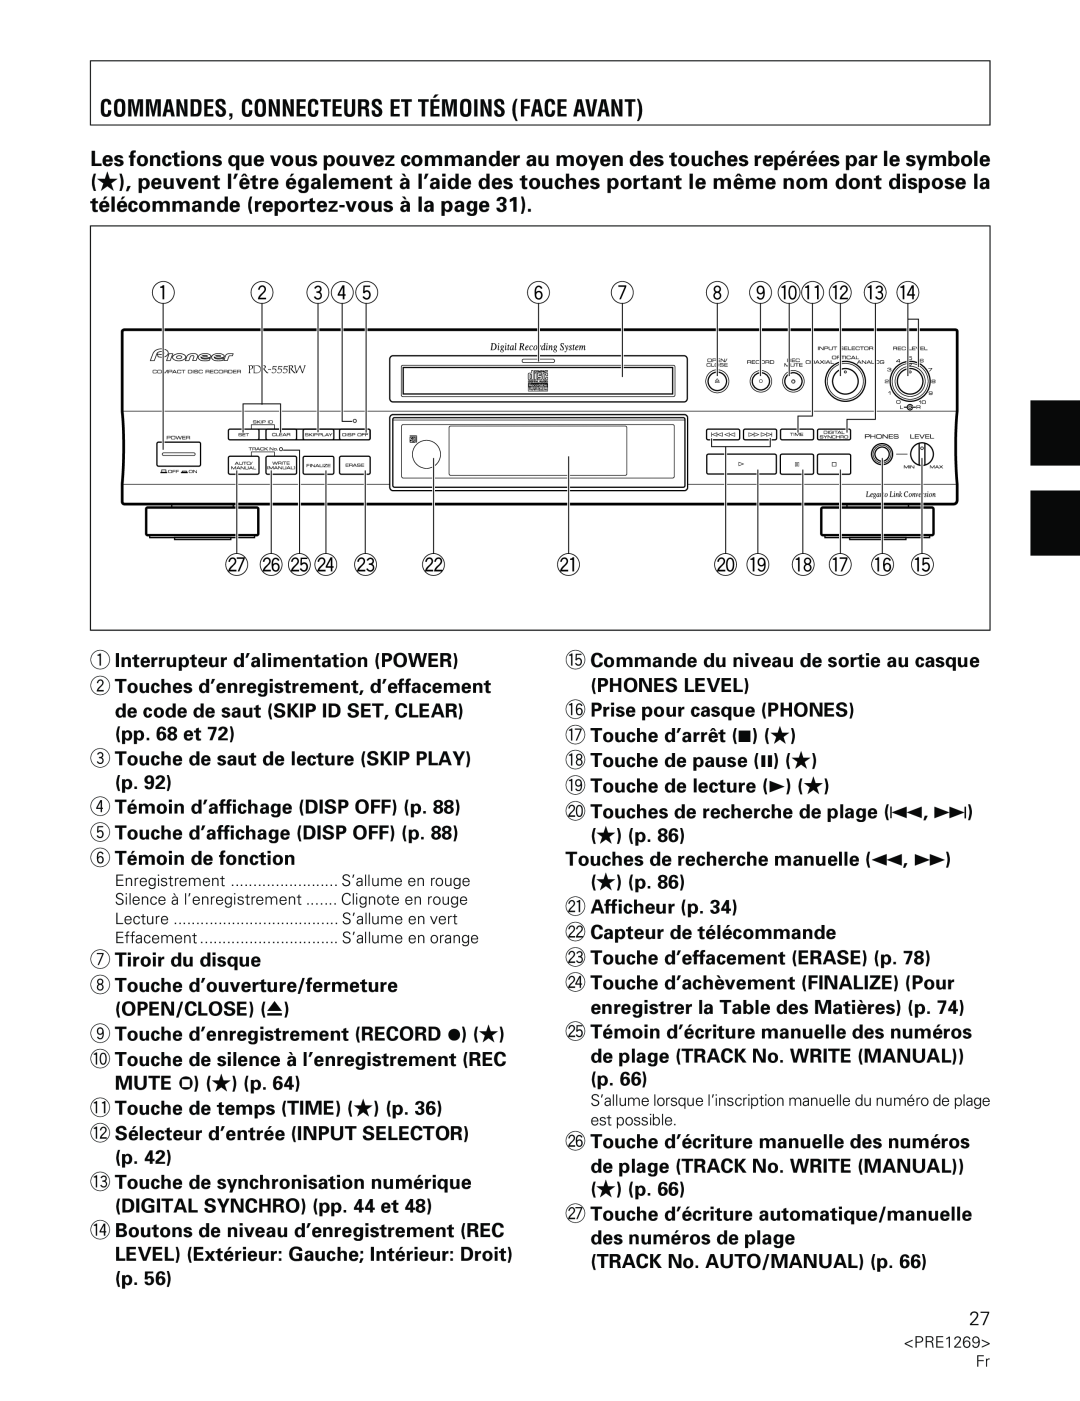 Pioneer PDR-555RW operating instructions Commandes, Connecteurs Et Témoins Face Avant 